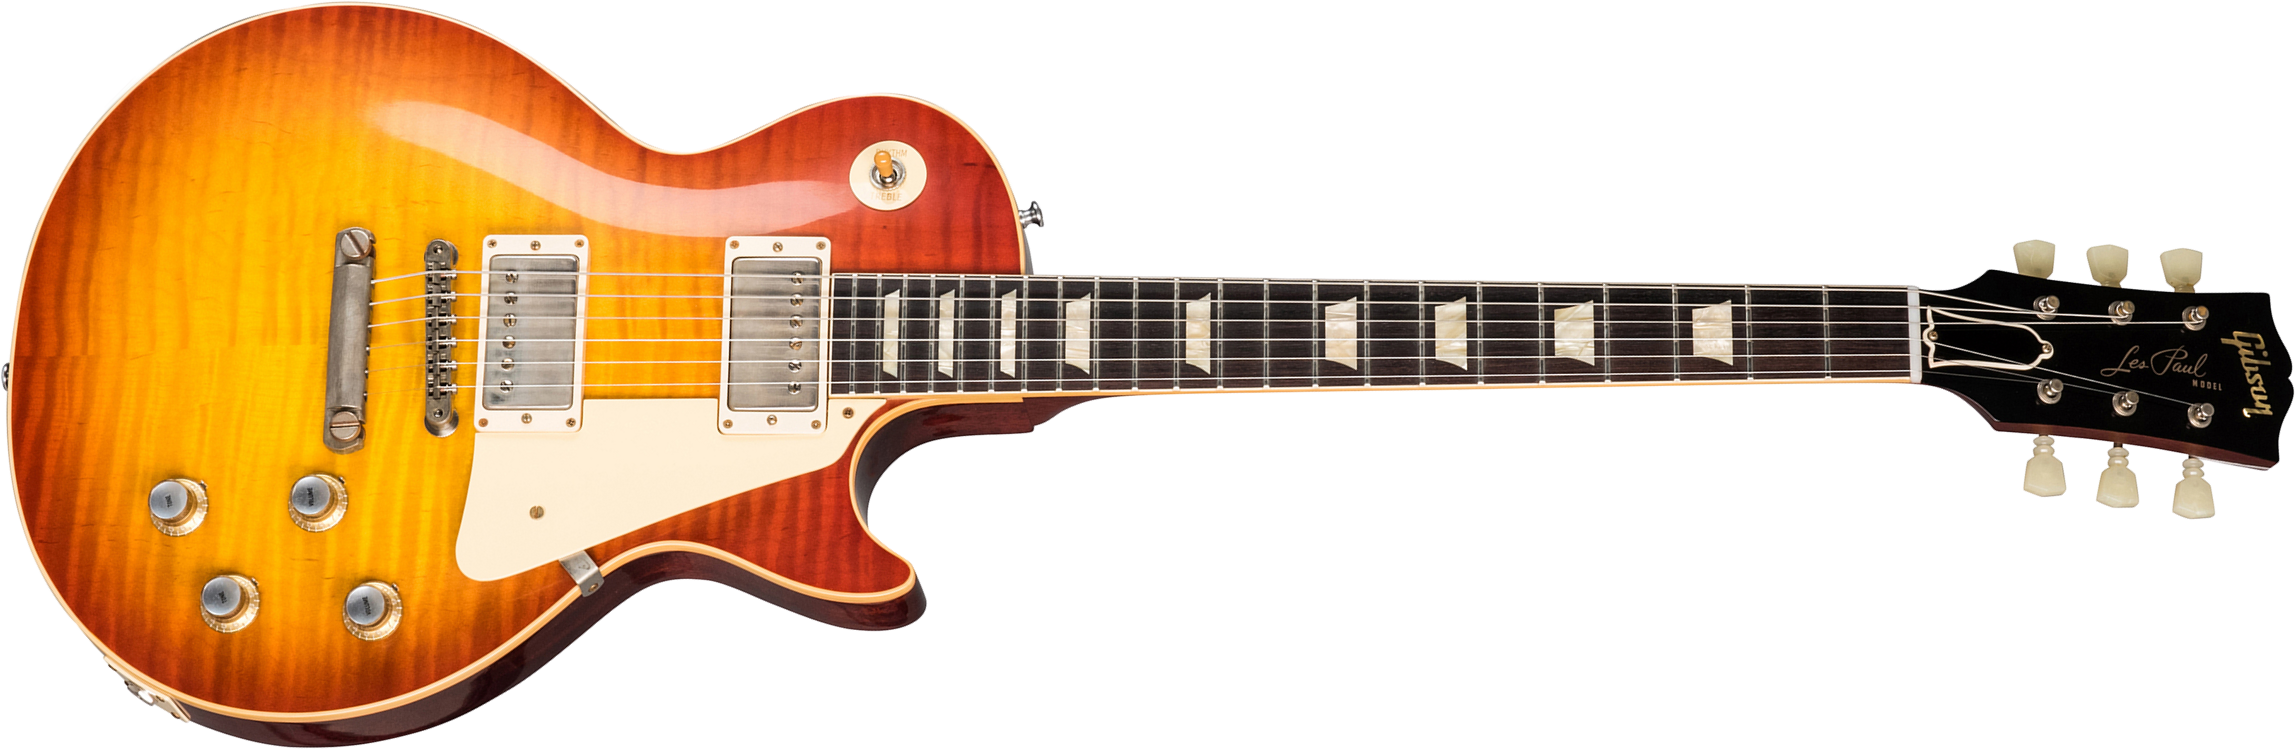 Gibson Custom Shop Les Paul Standard 1960 Reissue 2019 2h Ht Rw - Vos Washed Cherry Sunburst - Guitare Électrique Single Cut - Main picture